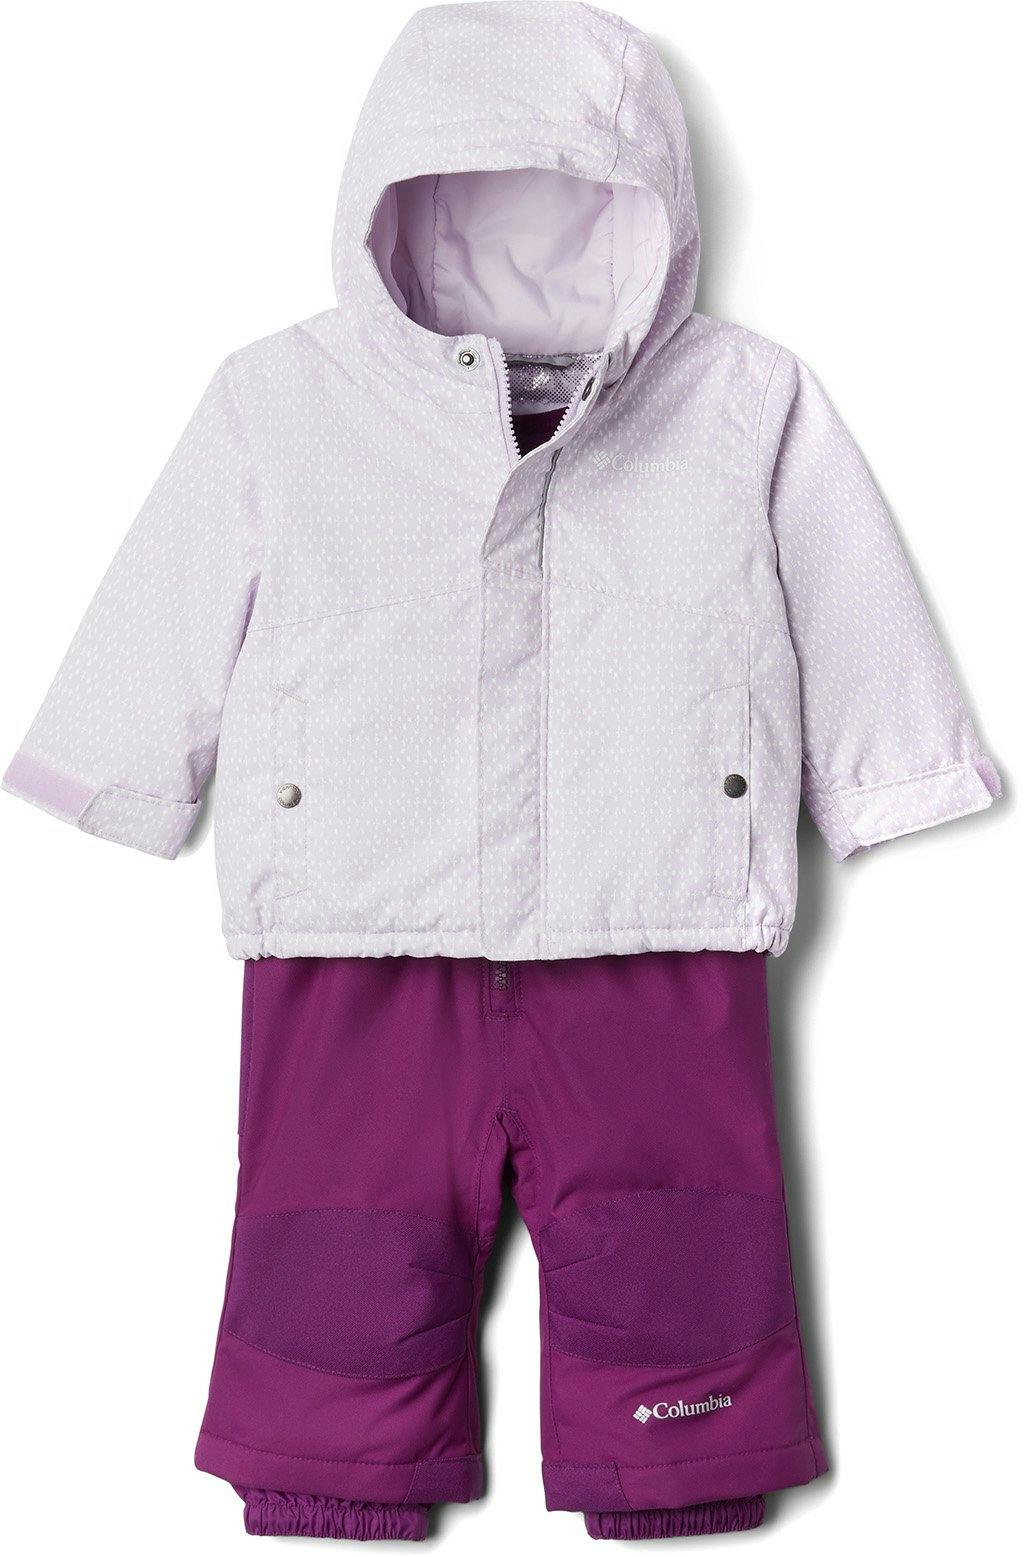 Product image for Buga™ Jacket & Bib Set - Infant